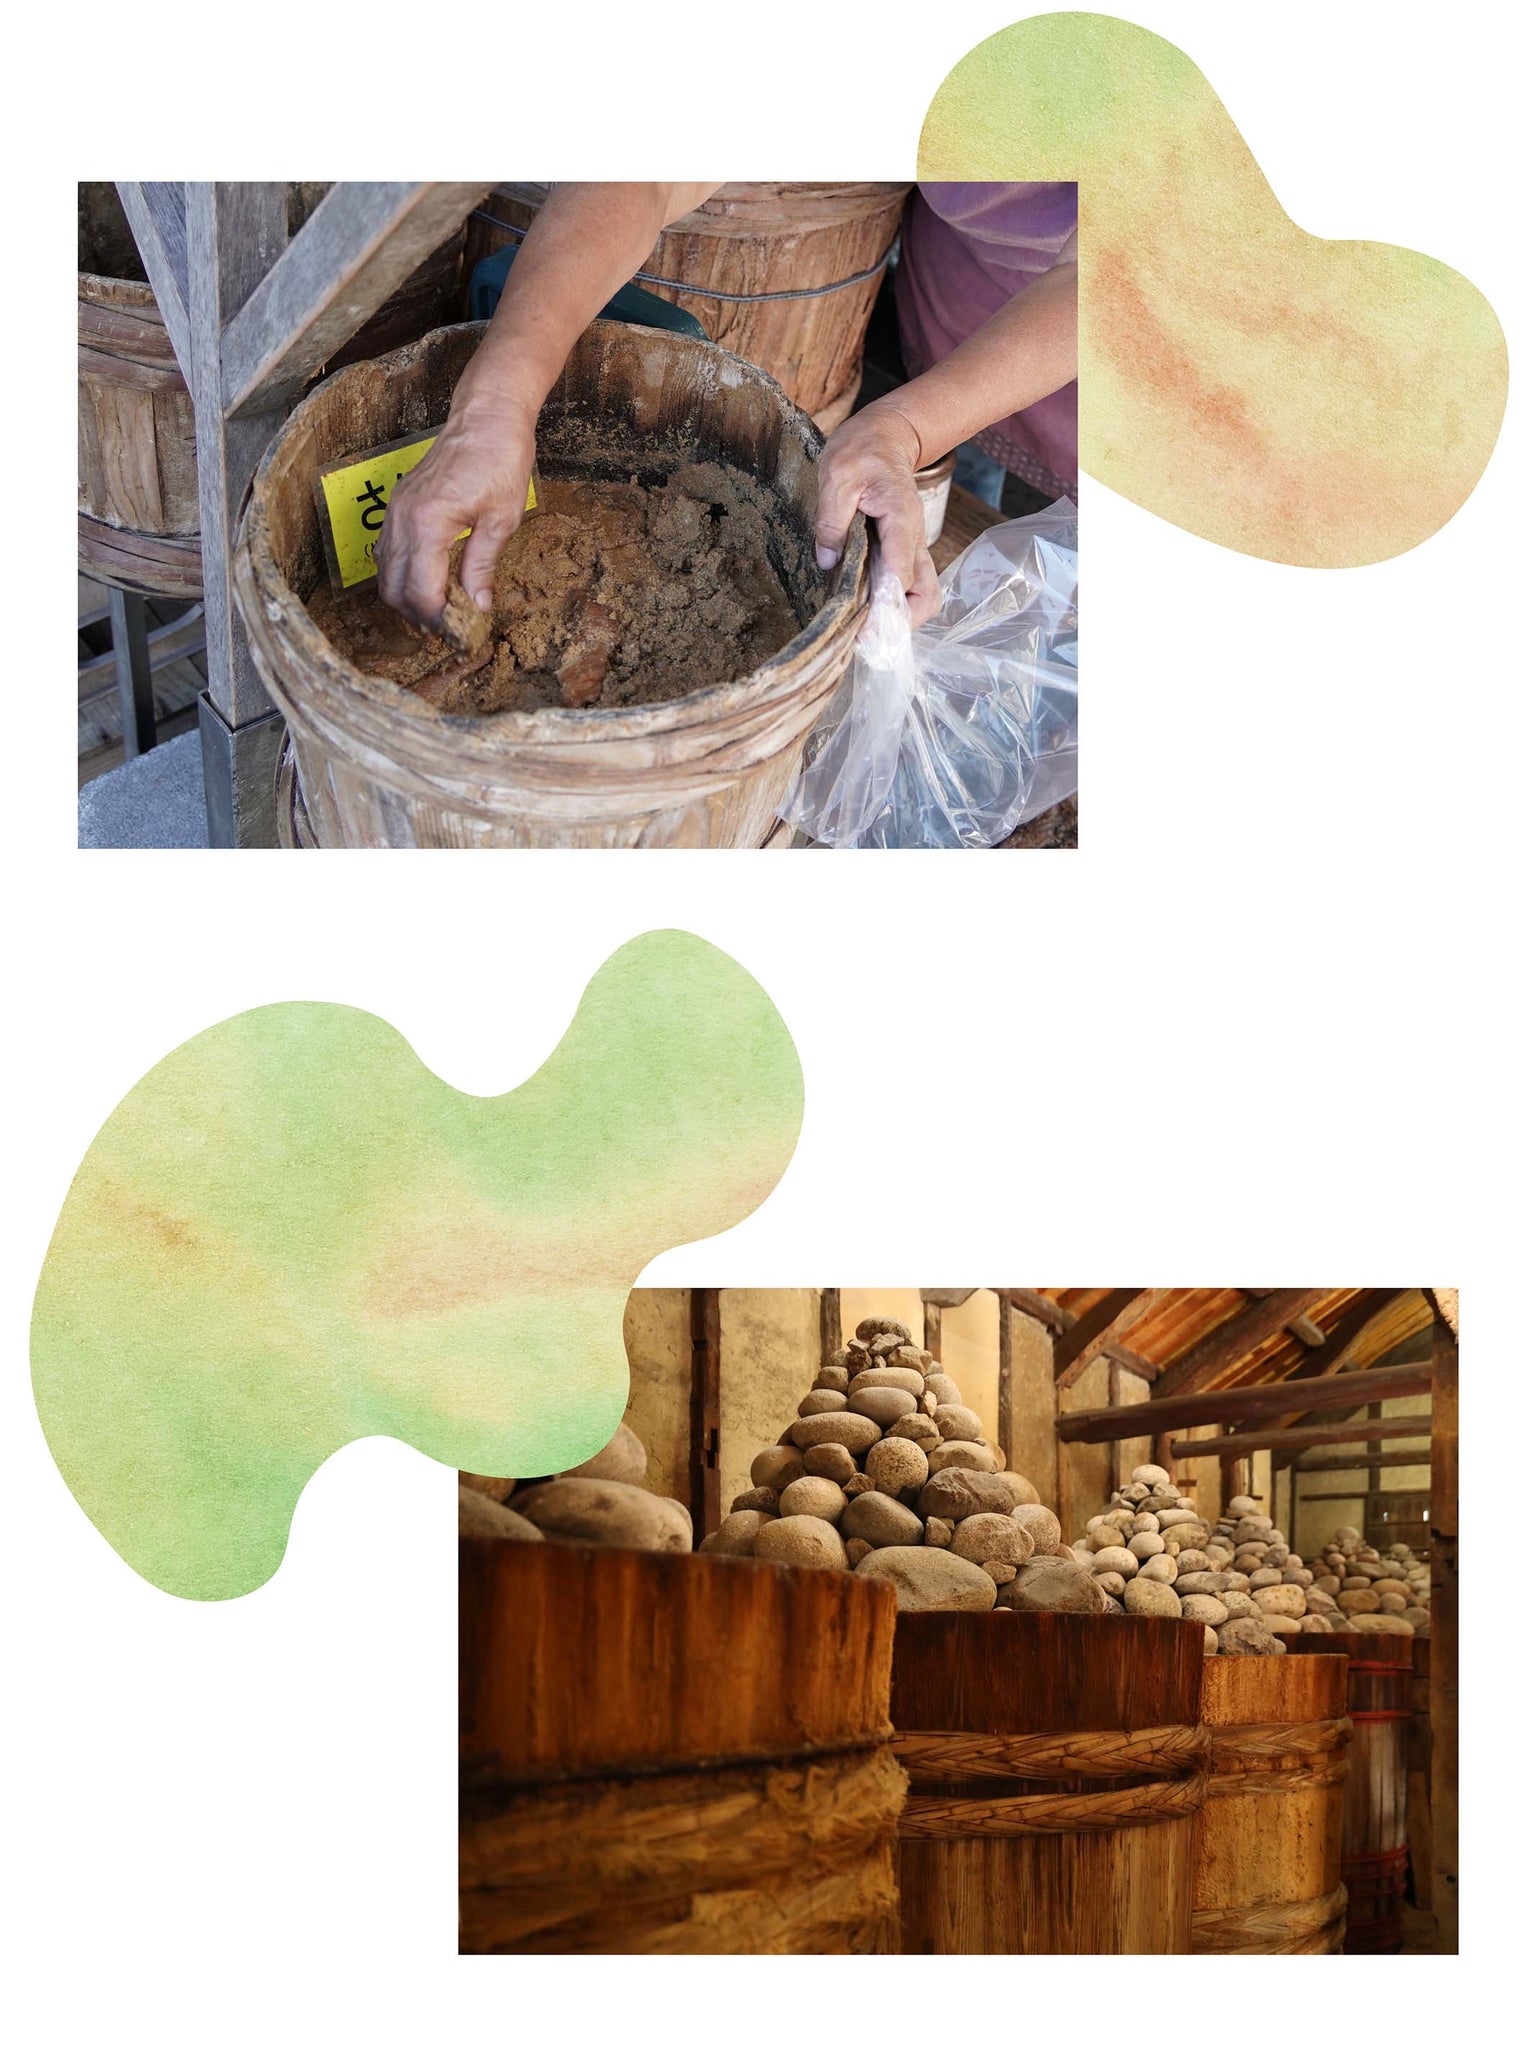 能登半島に位置する輪島市の輪島朝市では、地元の方が丁寧に作った発酵食品が並ぶ。